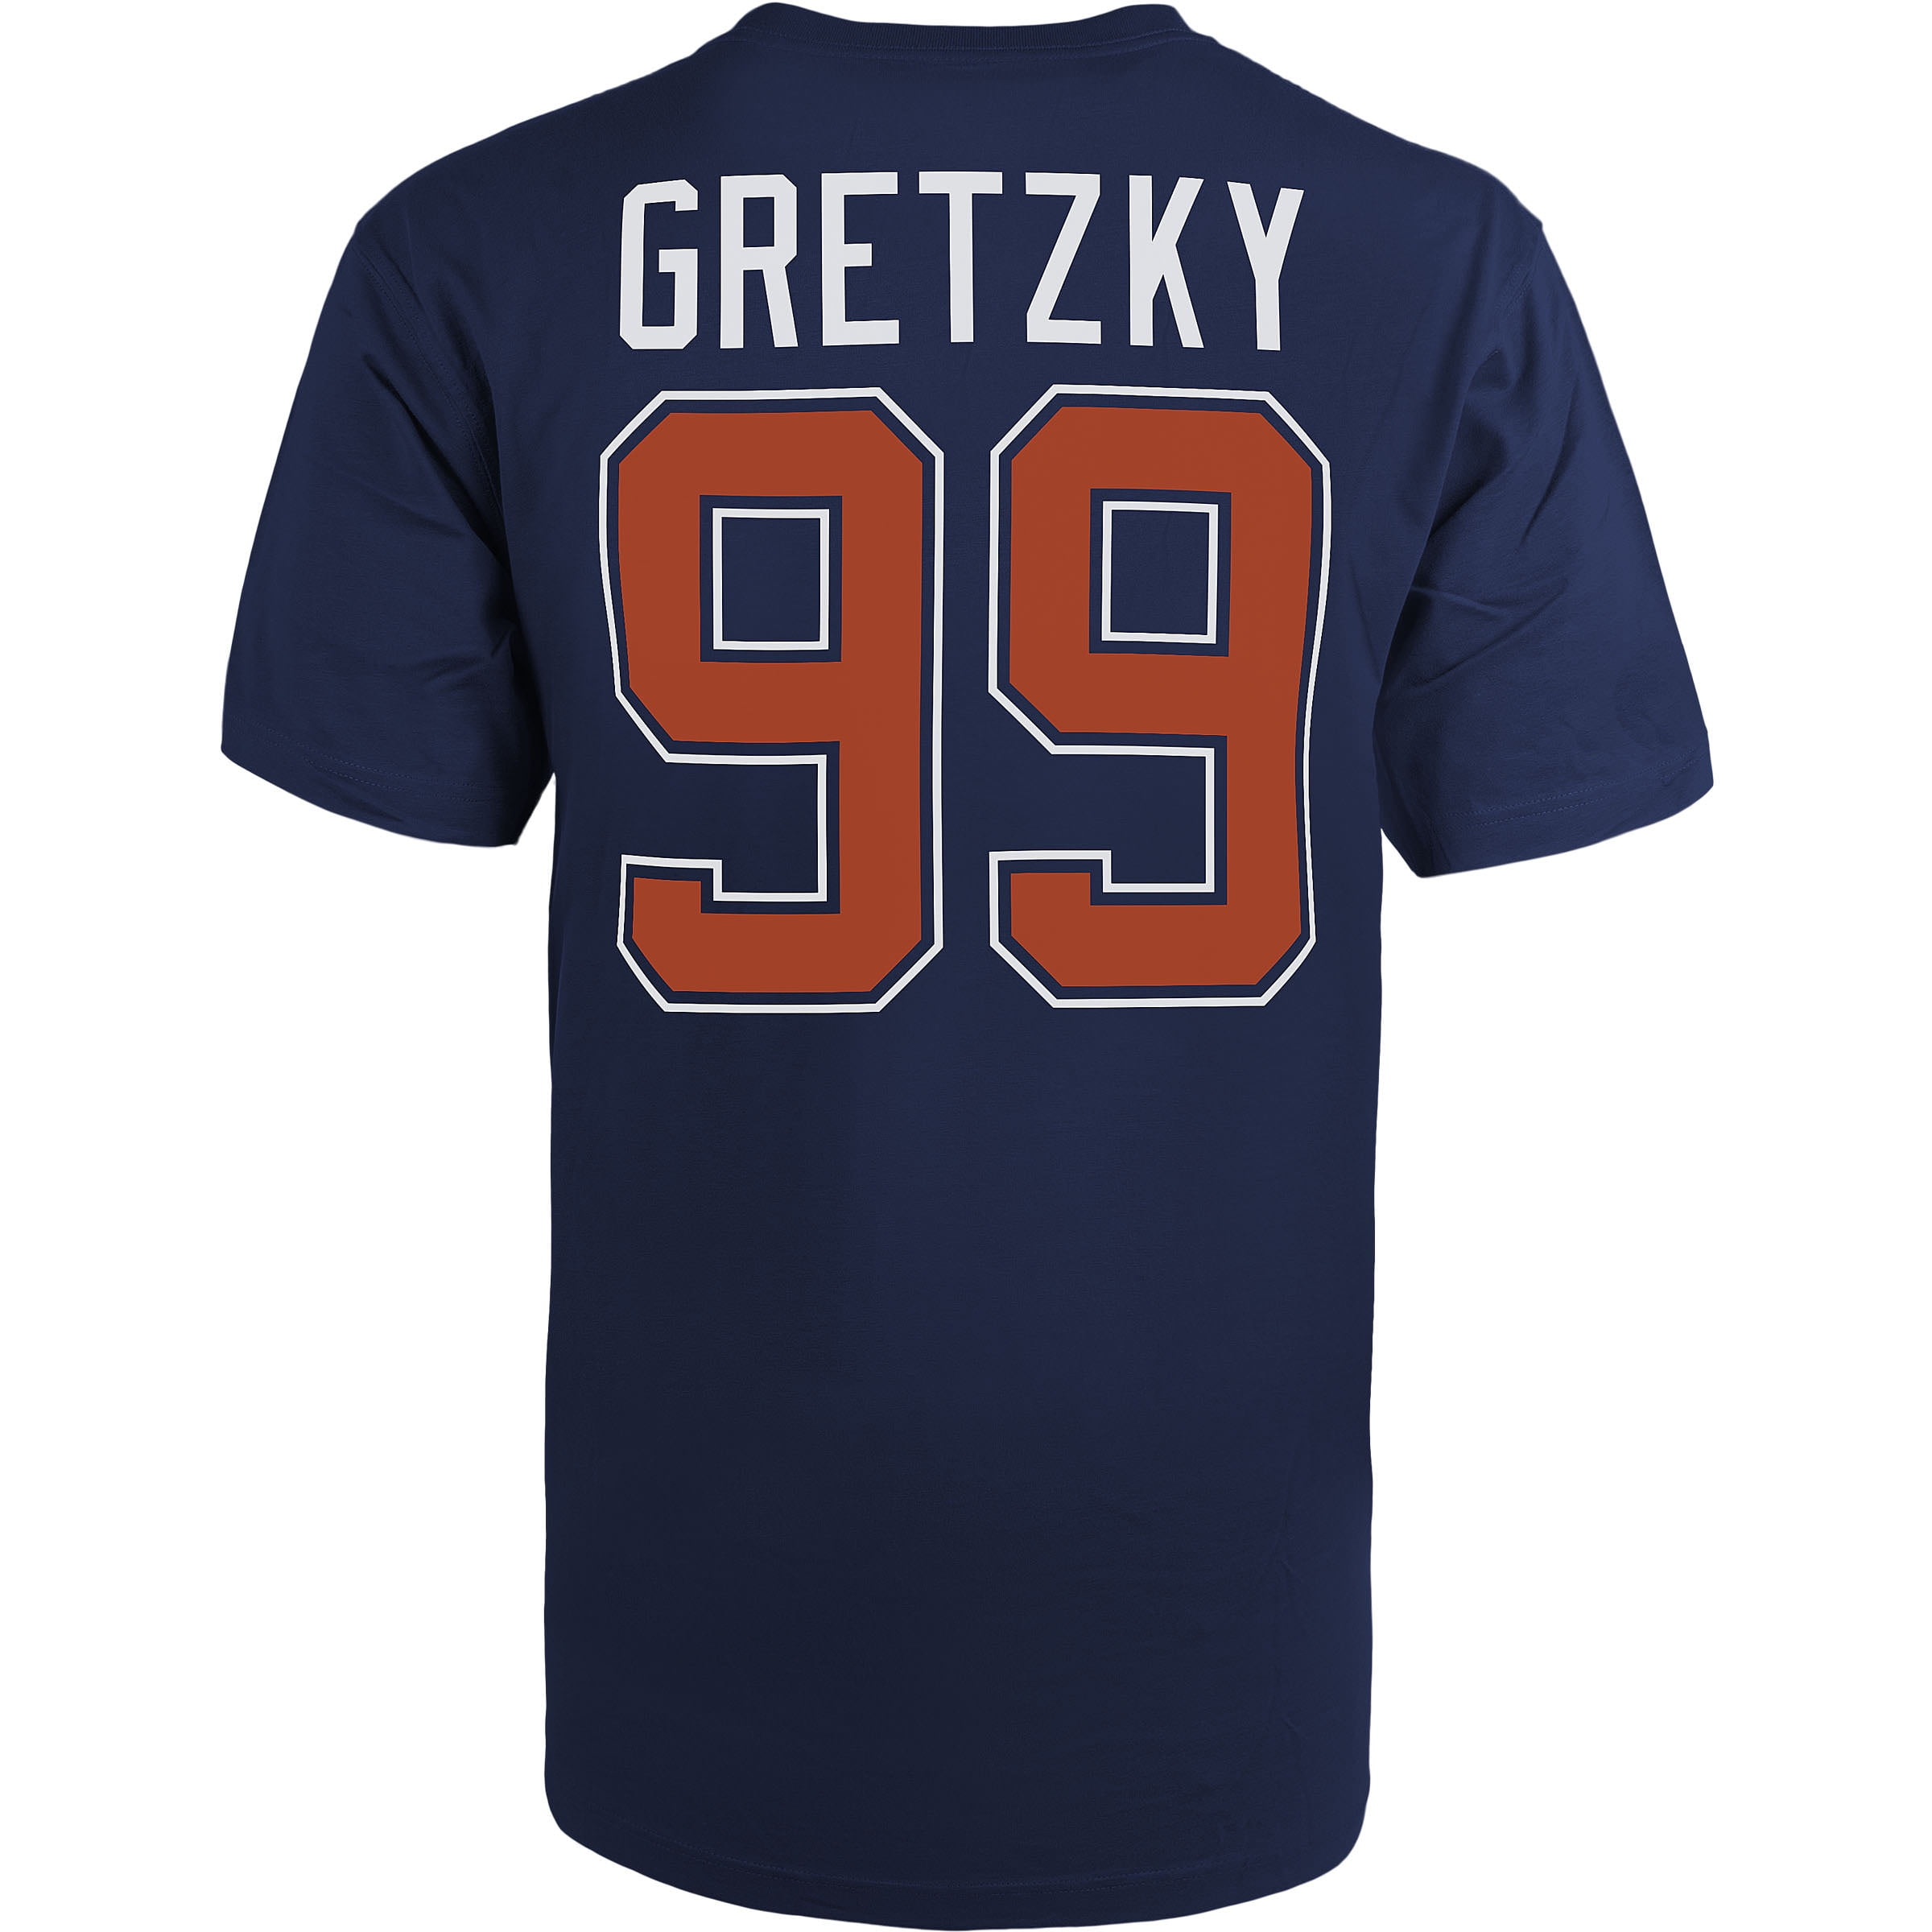 wayne gretzky shirt number